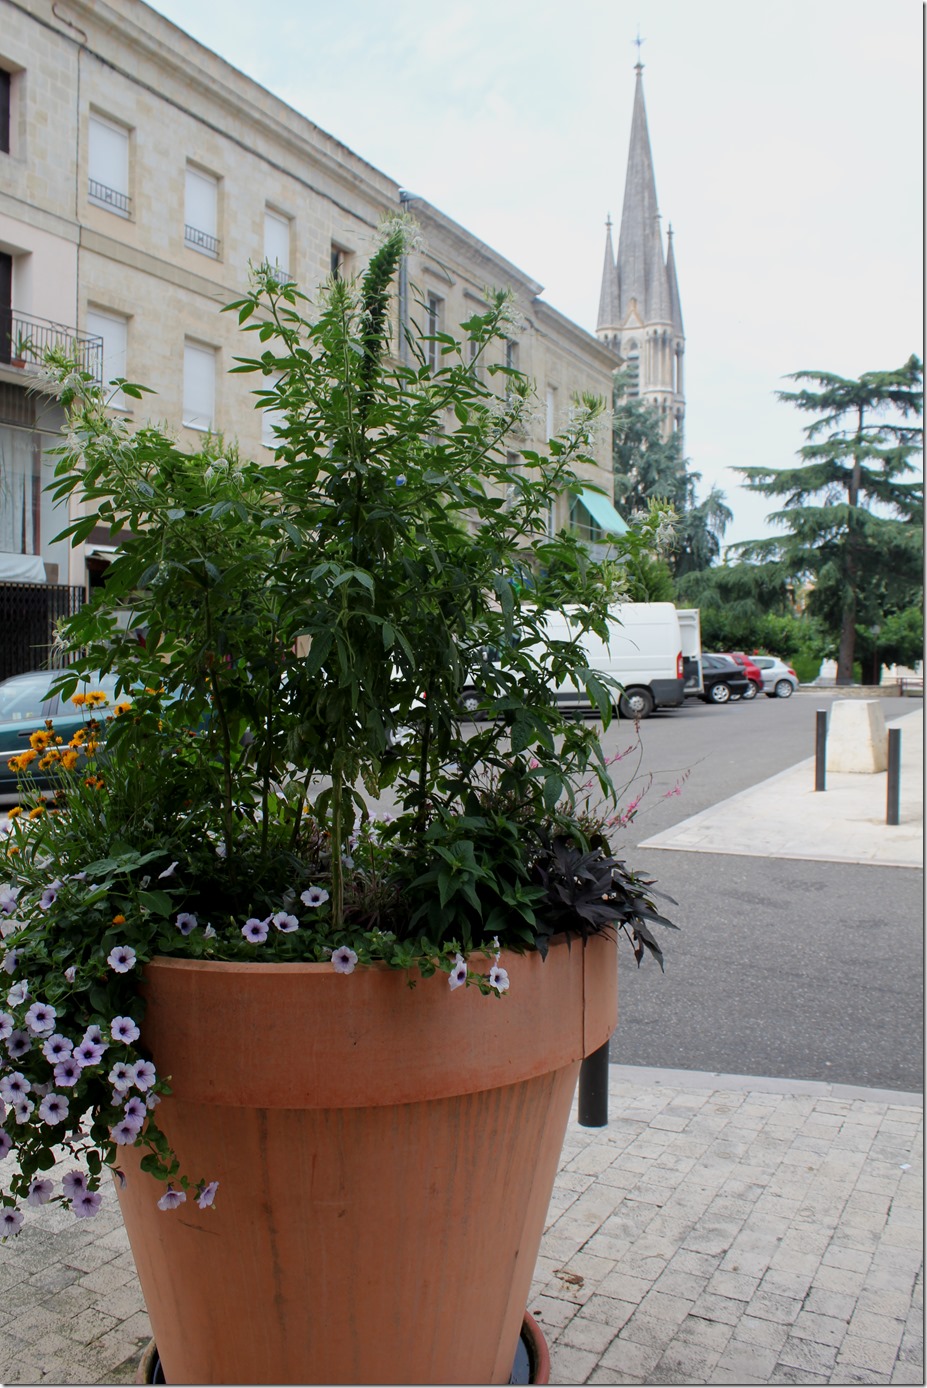 Giant flowerpots in Miramont de Guyenne